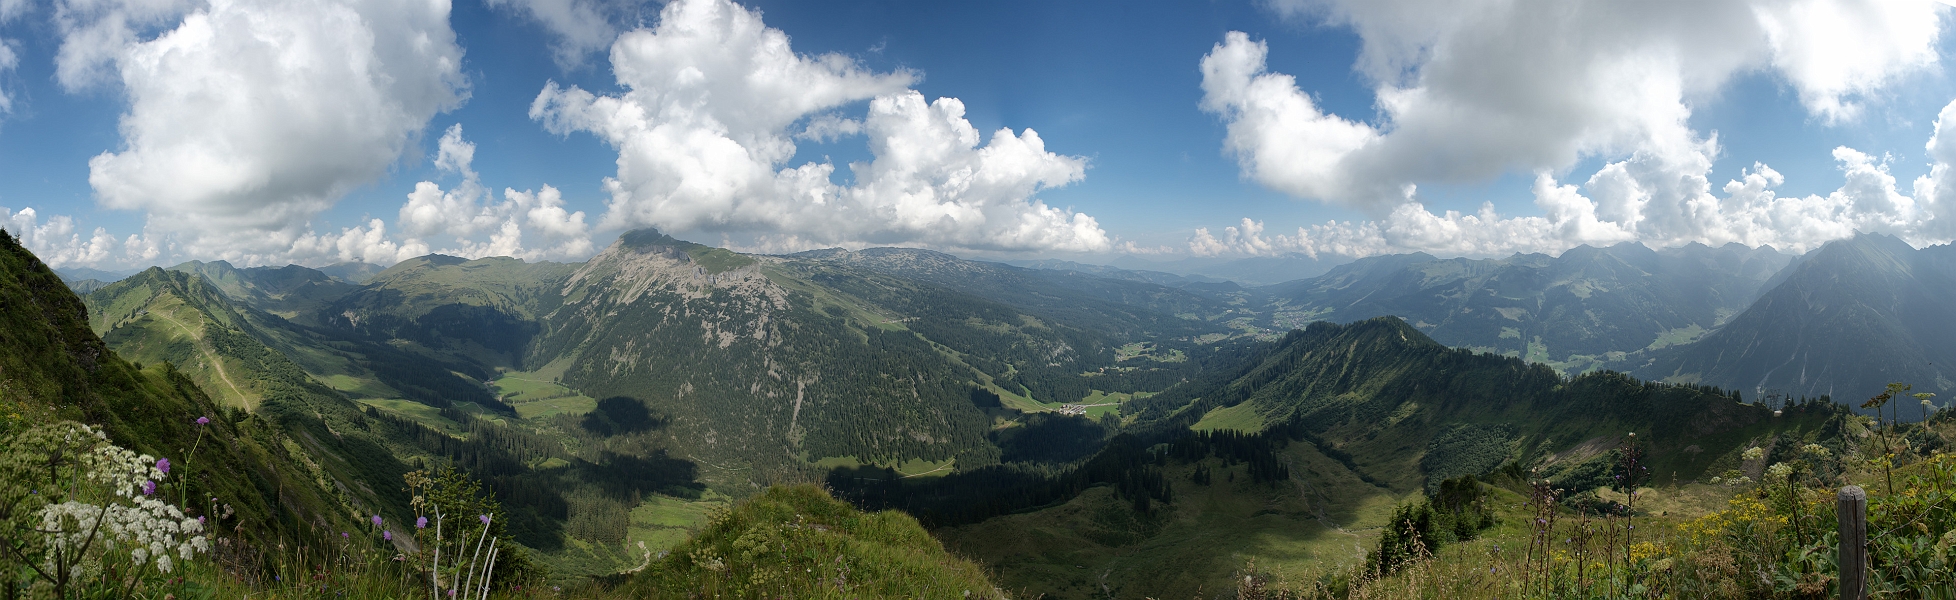 DSC_5960 Panorama.jpg - Blick vom Walmendingerhorn auf den Ifen - Pano aus acht Aufnahmen